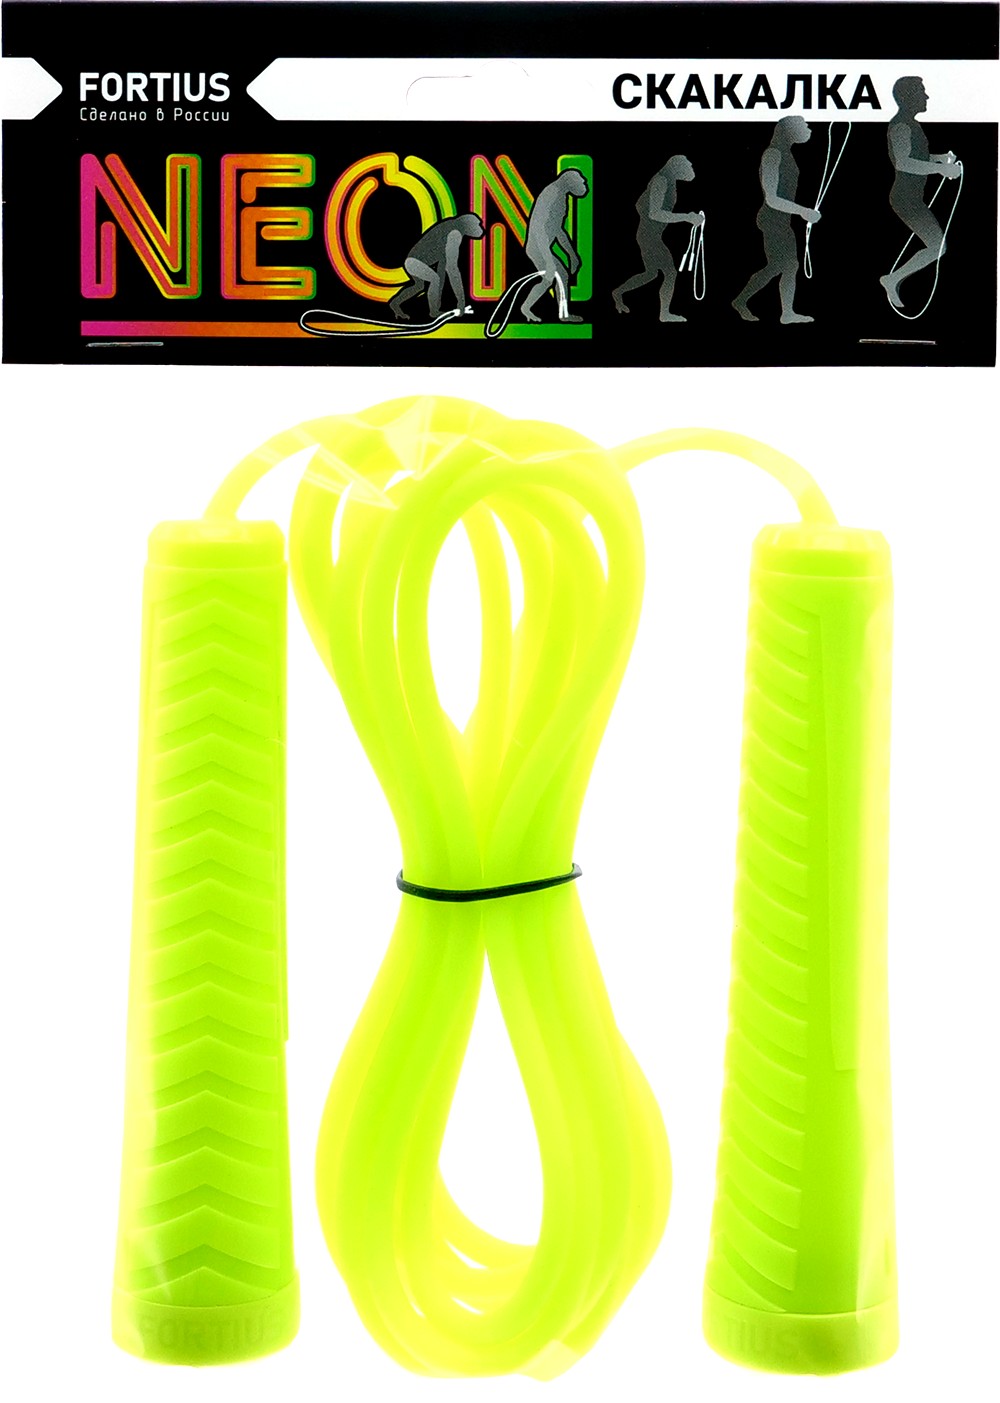 Скакалка Fortius Neon шнур 3 м в пакете (желтая) 1000_1403